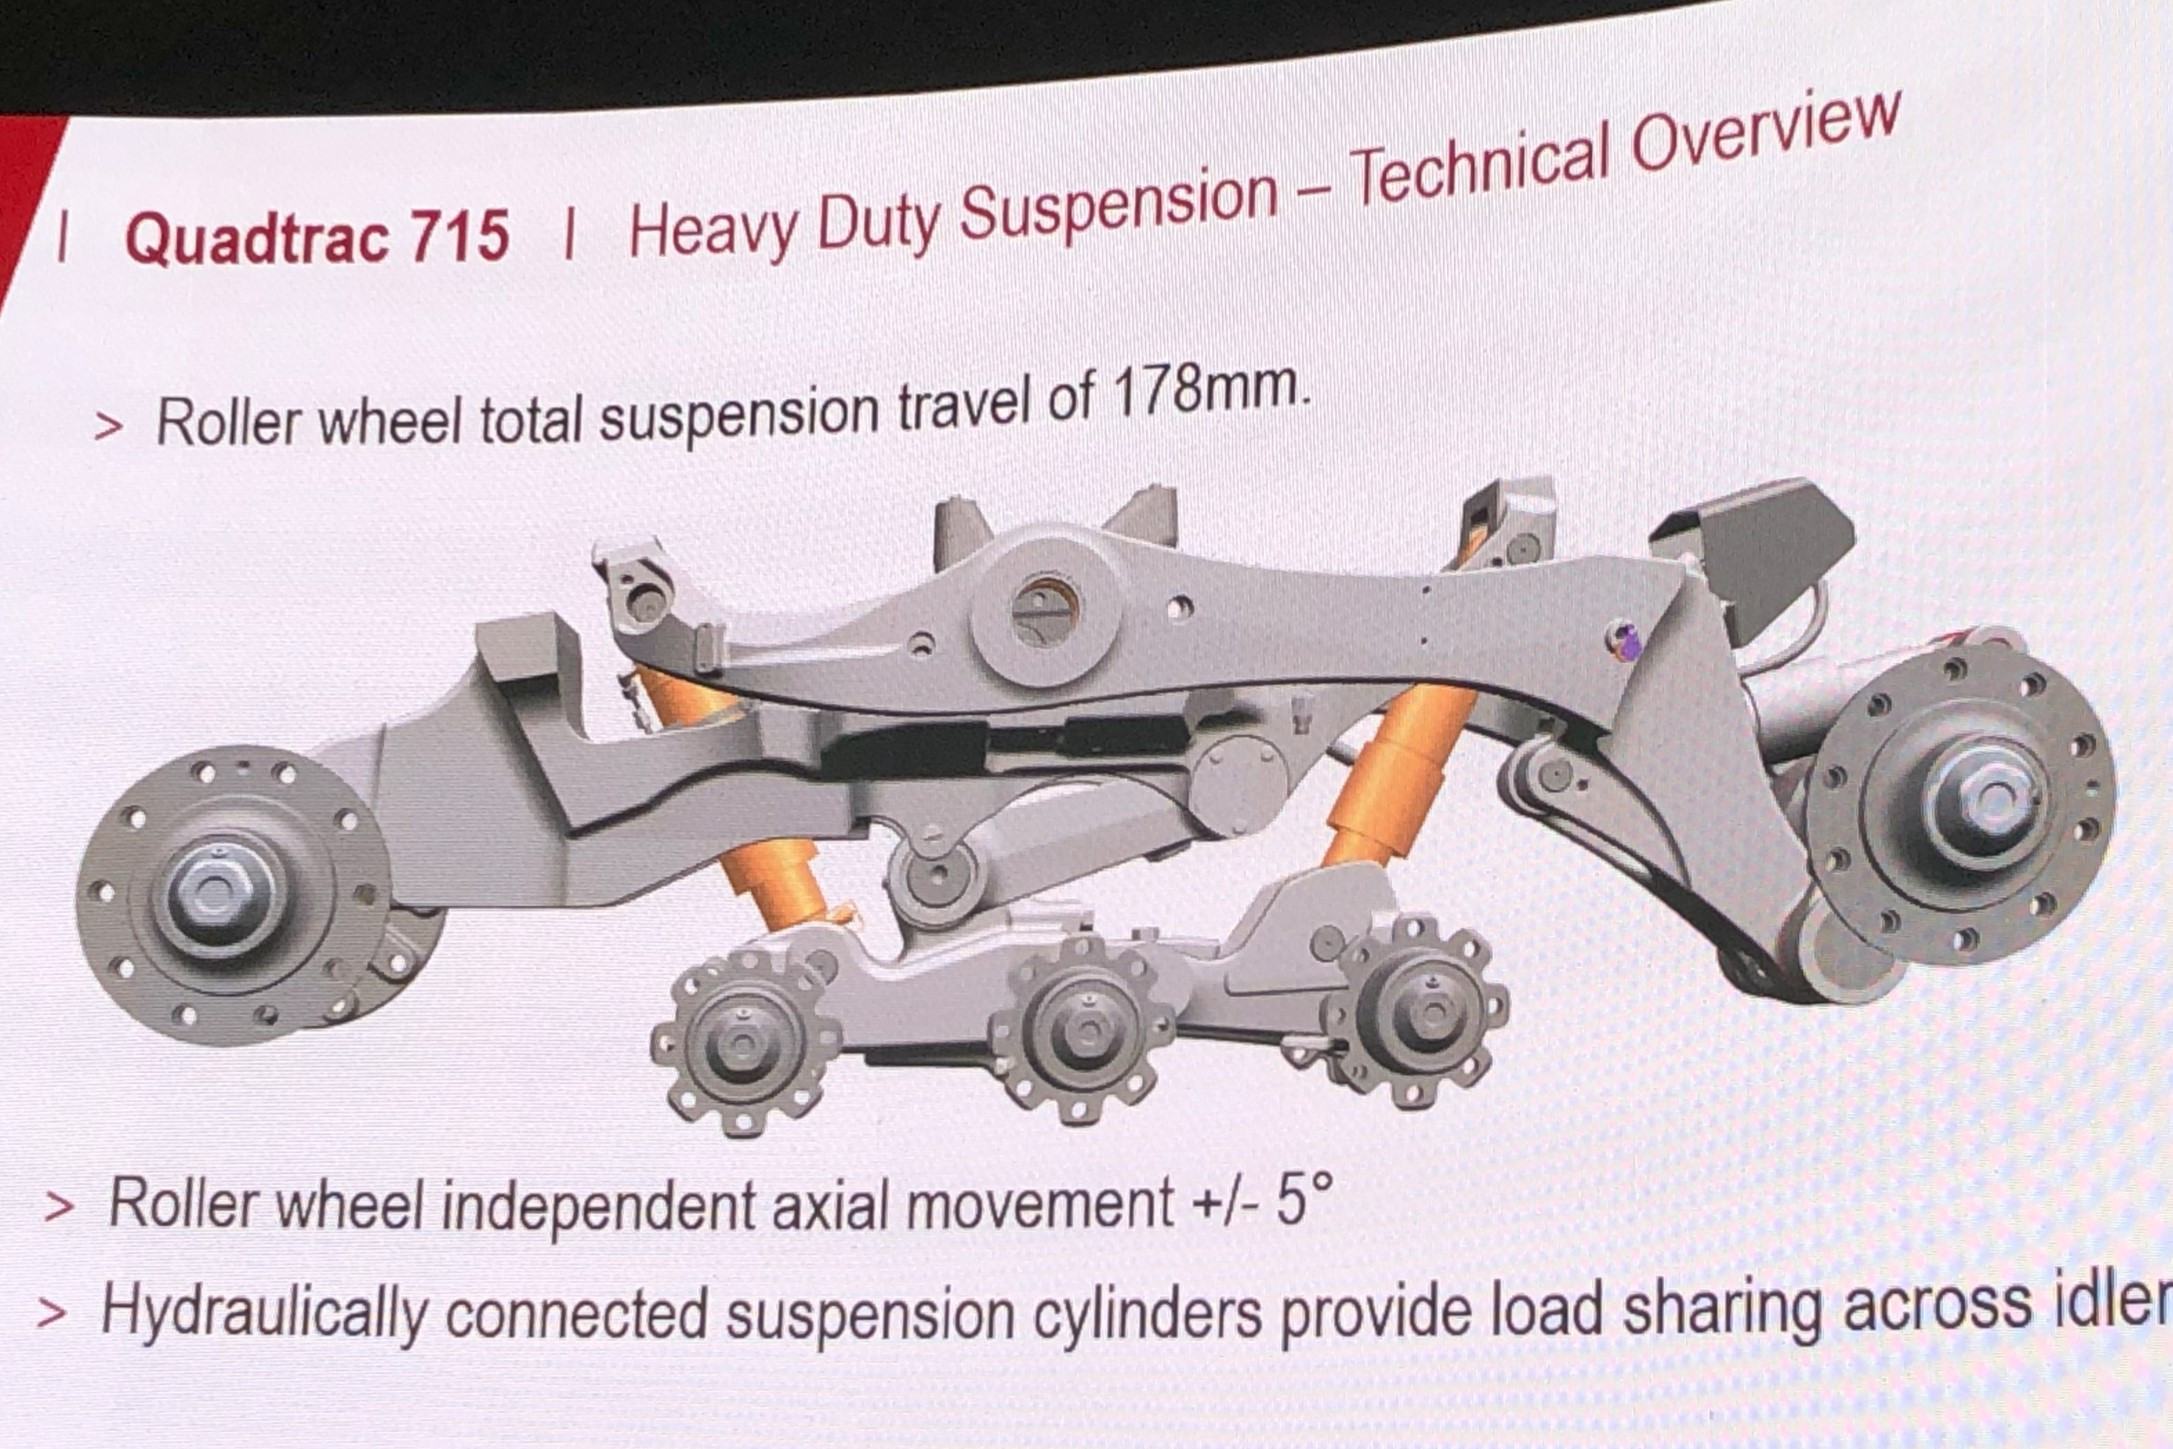 Een schematische tekening van het Heavy Duty Suspension (HDS)-systeem. Een kantelstuk en twee cilinders zorgen voor een pendelende en verende werking van de looprollen.